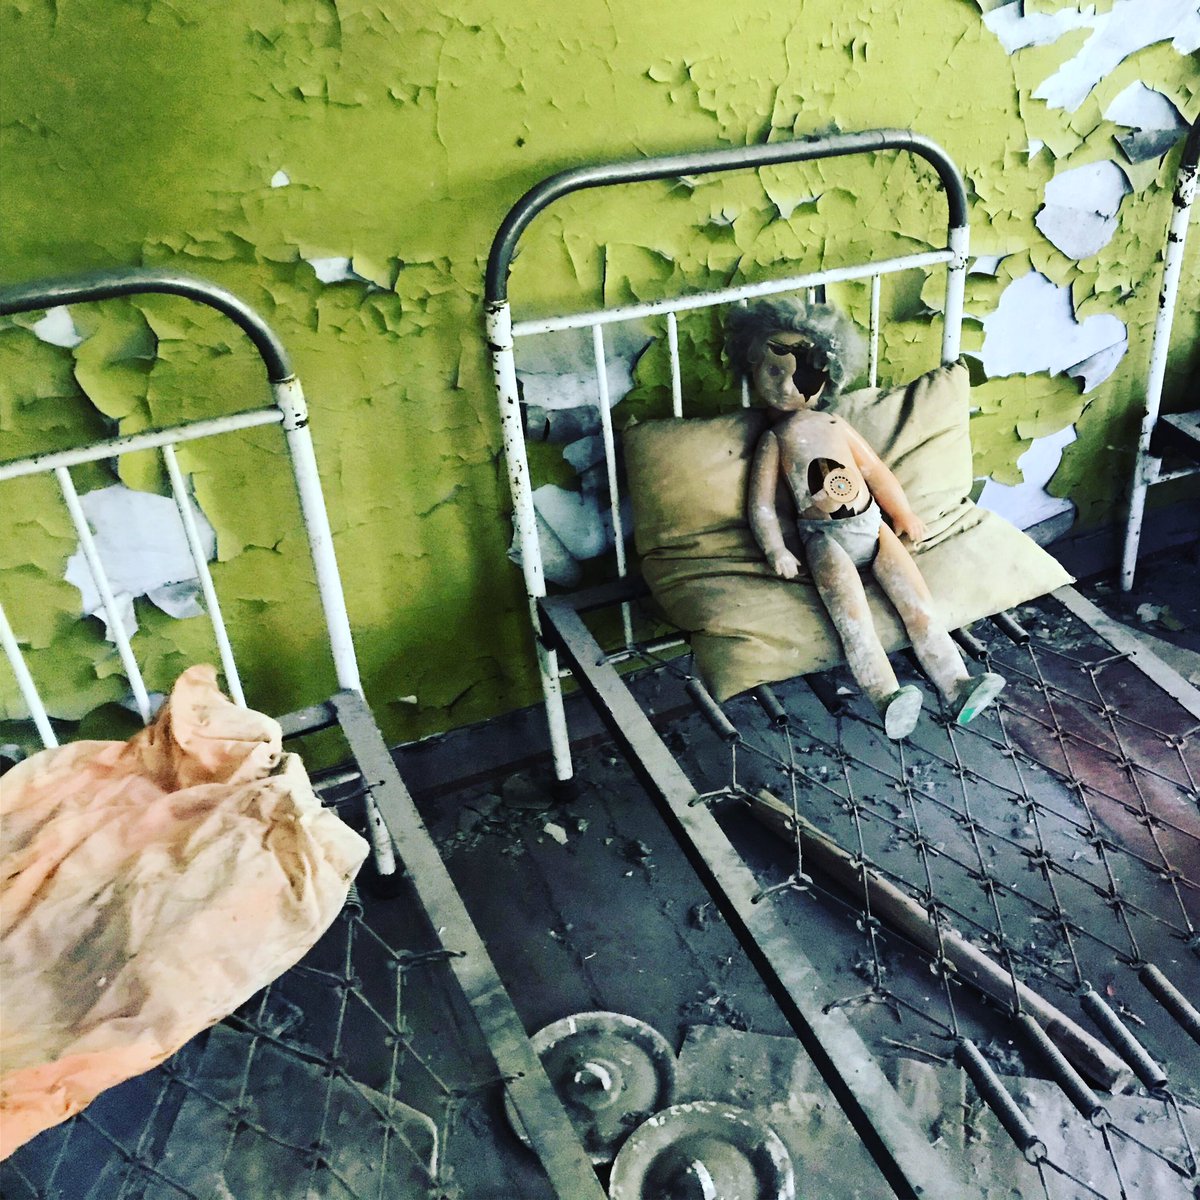 Toutefois une garderie d’enfants plutôt effrayante est toujours visible. Complètement délabré, des jouets sont dispersés çà et là et l’ambiance est plutôt glassante.  #Tchernobyl  (Plus de photos:  http://Instagram.com/nashtagstagram )